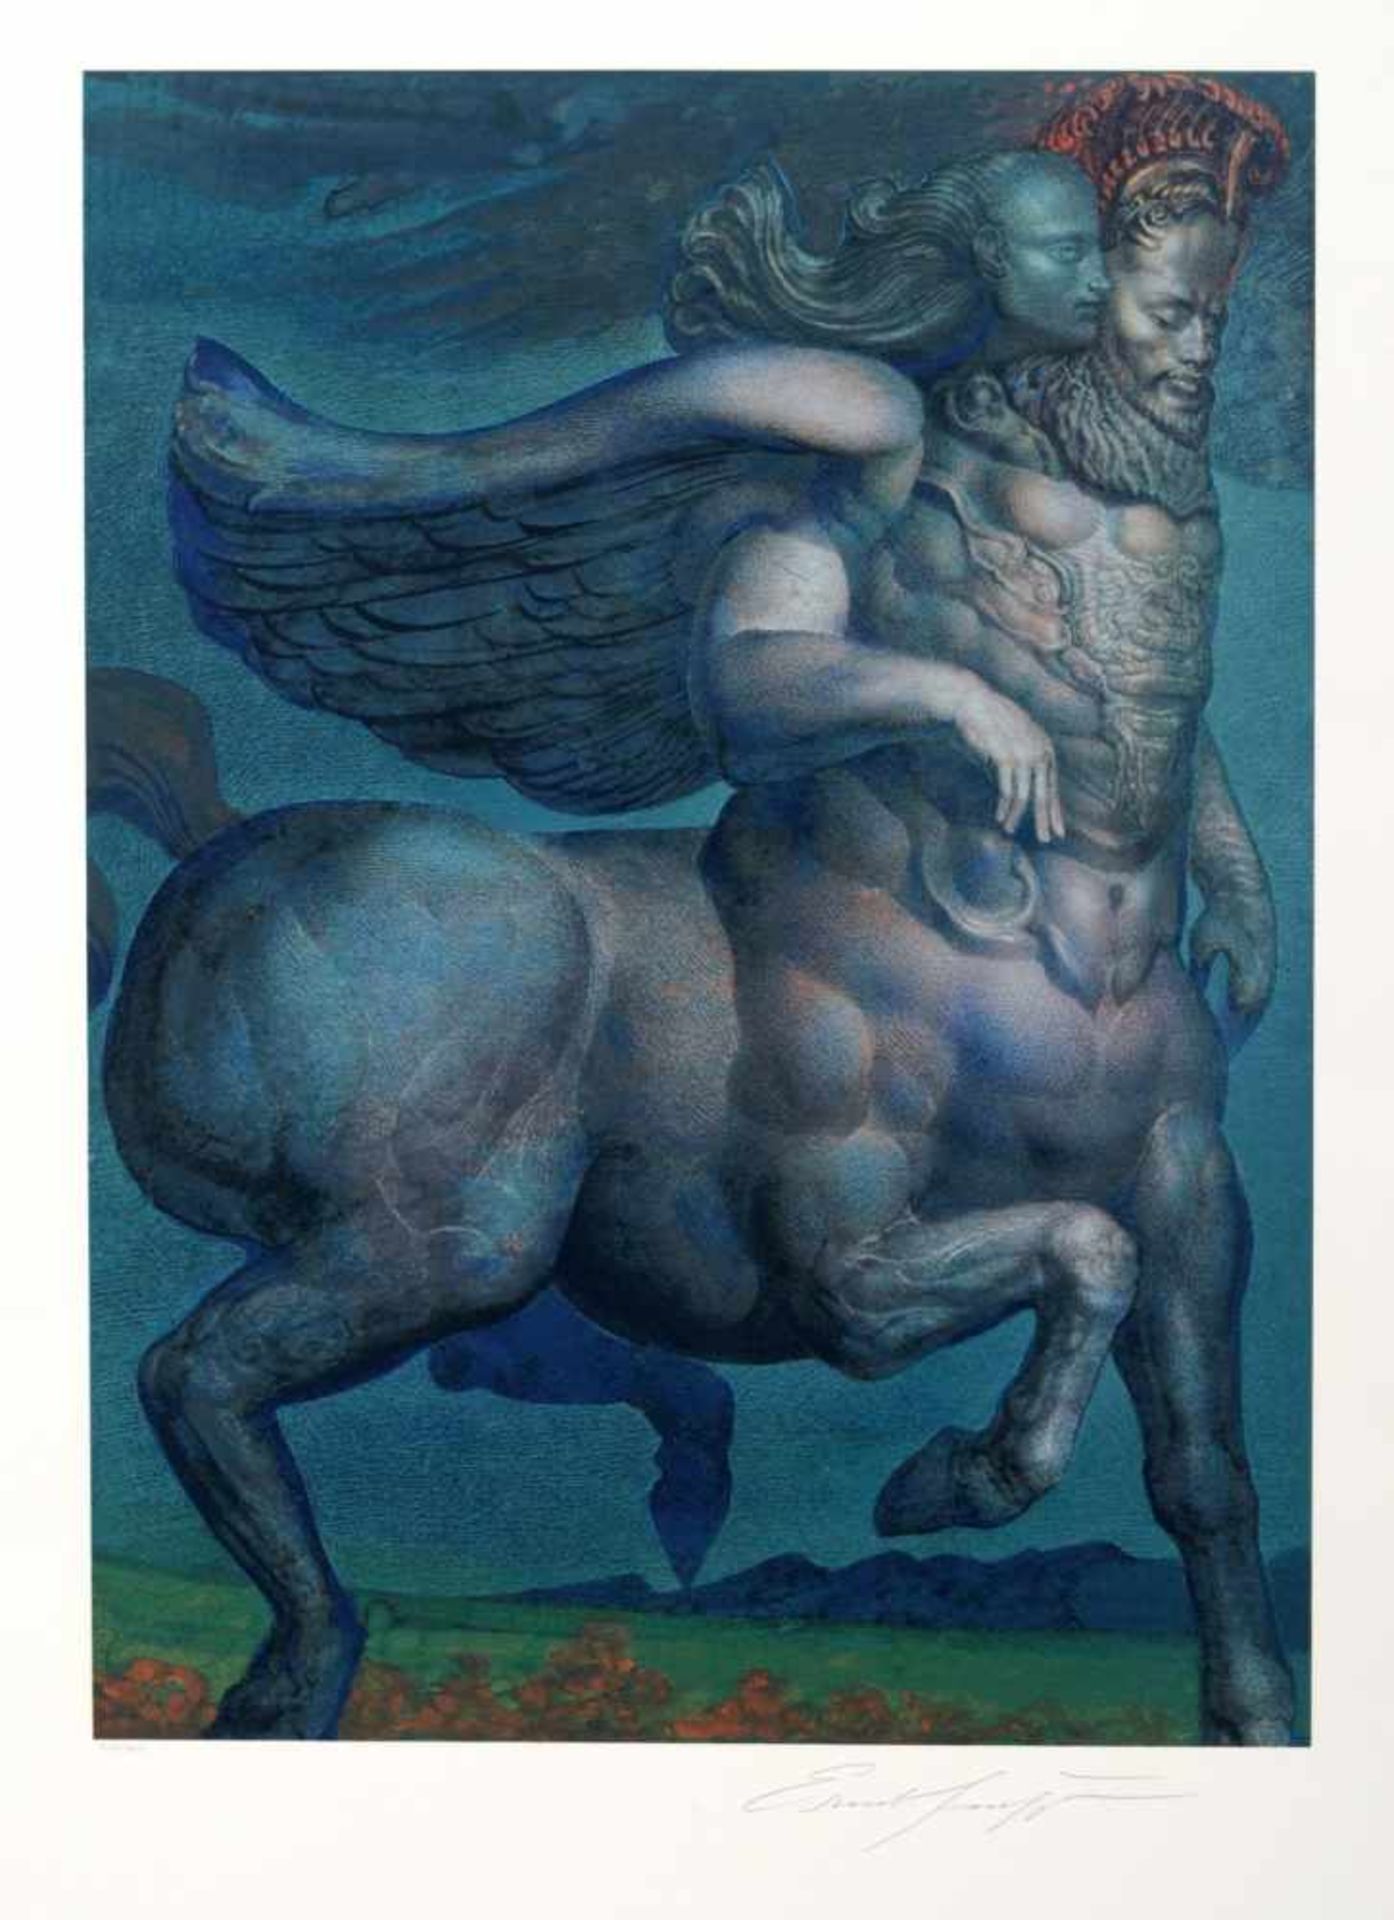 Ernst Fuchs "Pegasus und Muse". 1979. Farbserigrafie auf kräftigem Bütten, gedruckt in 50 Farben. In